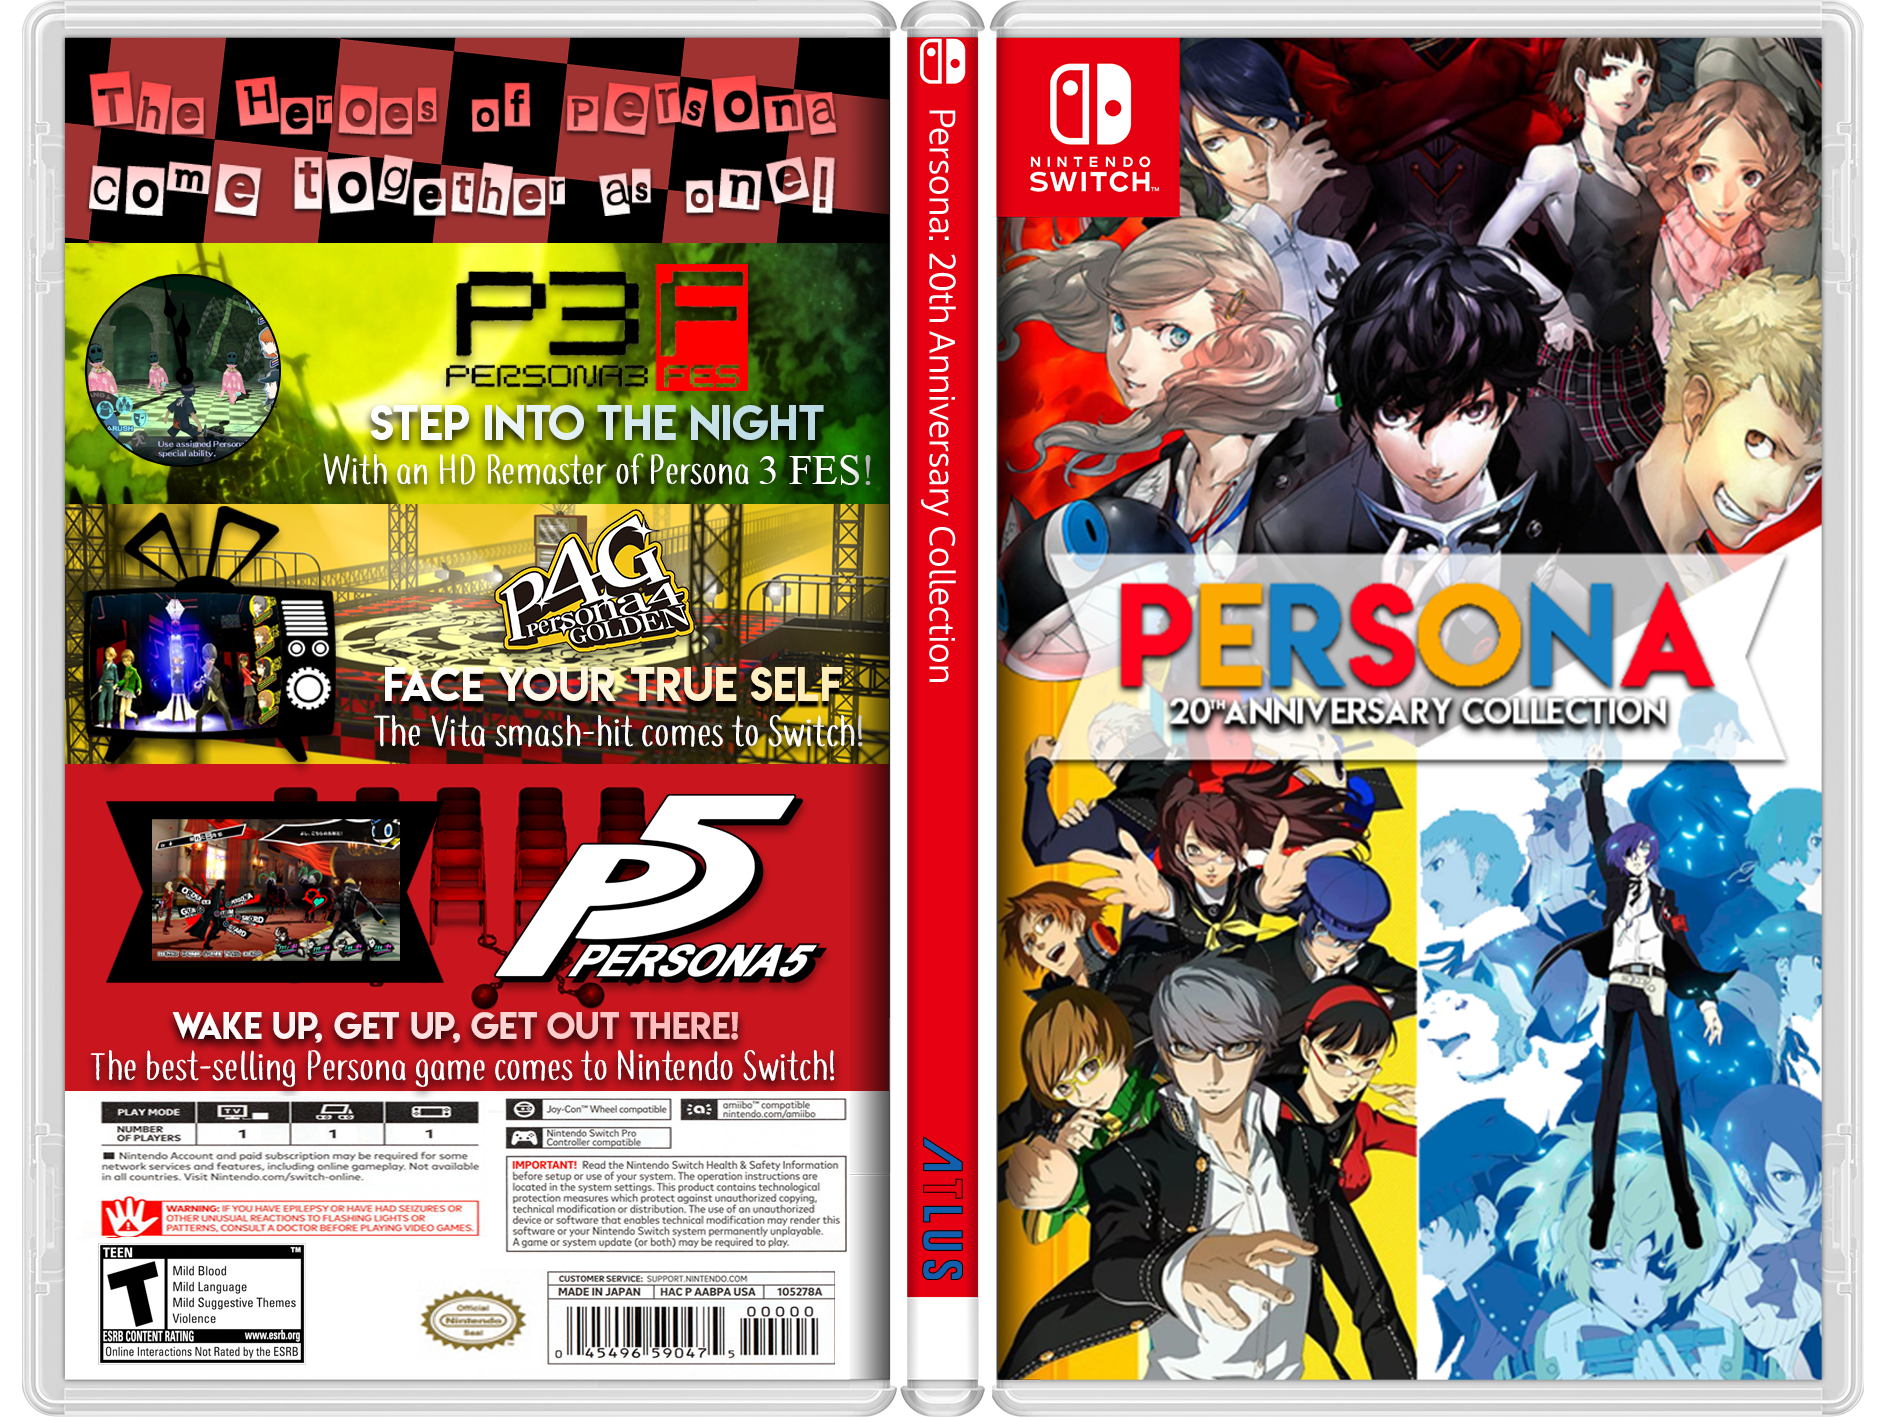 Persona: 20th Anniversary Edition box cover